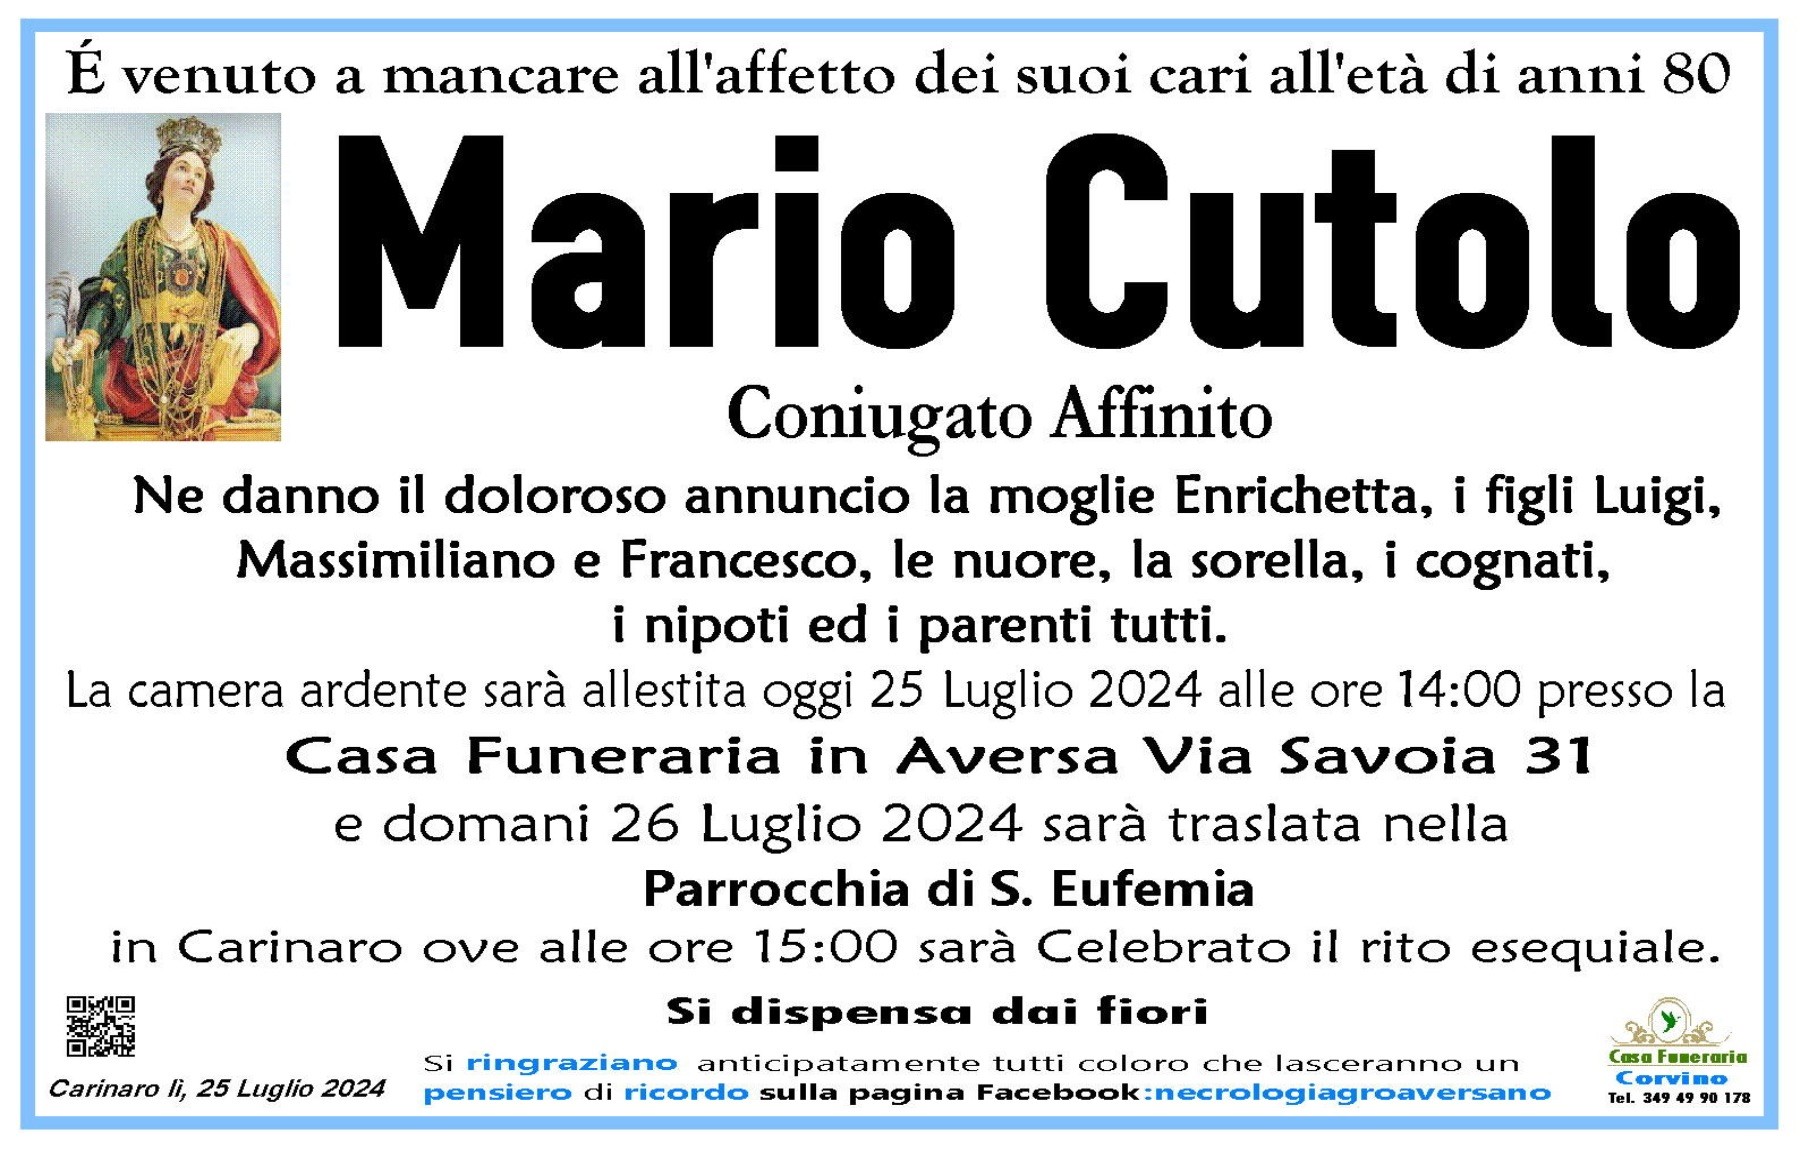 Mario Cutolo